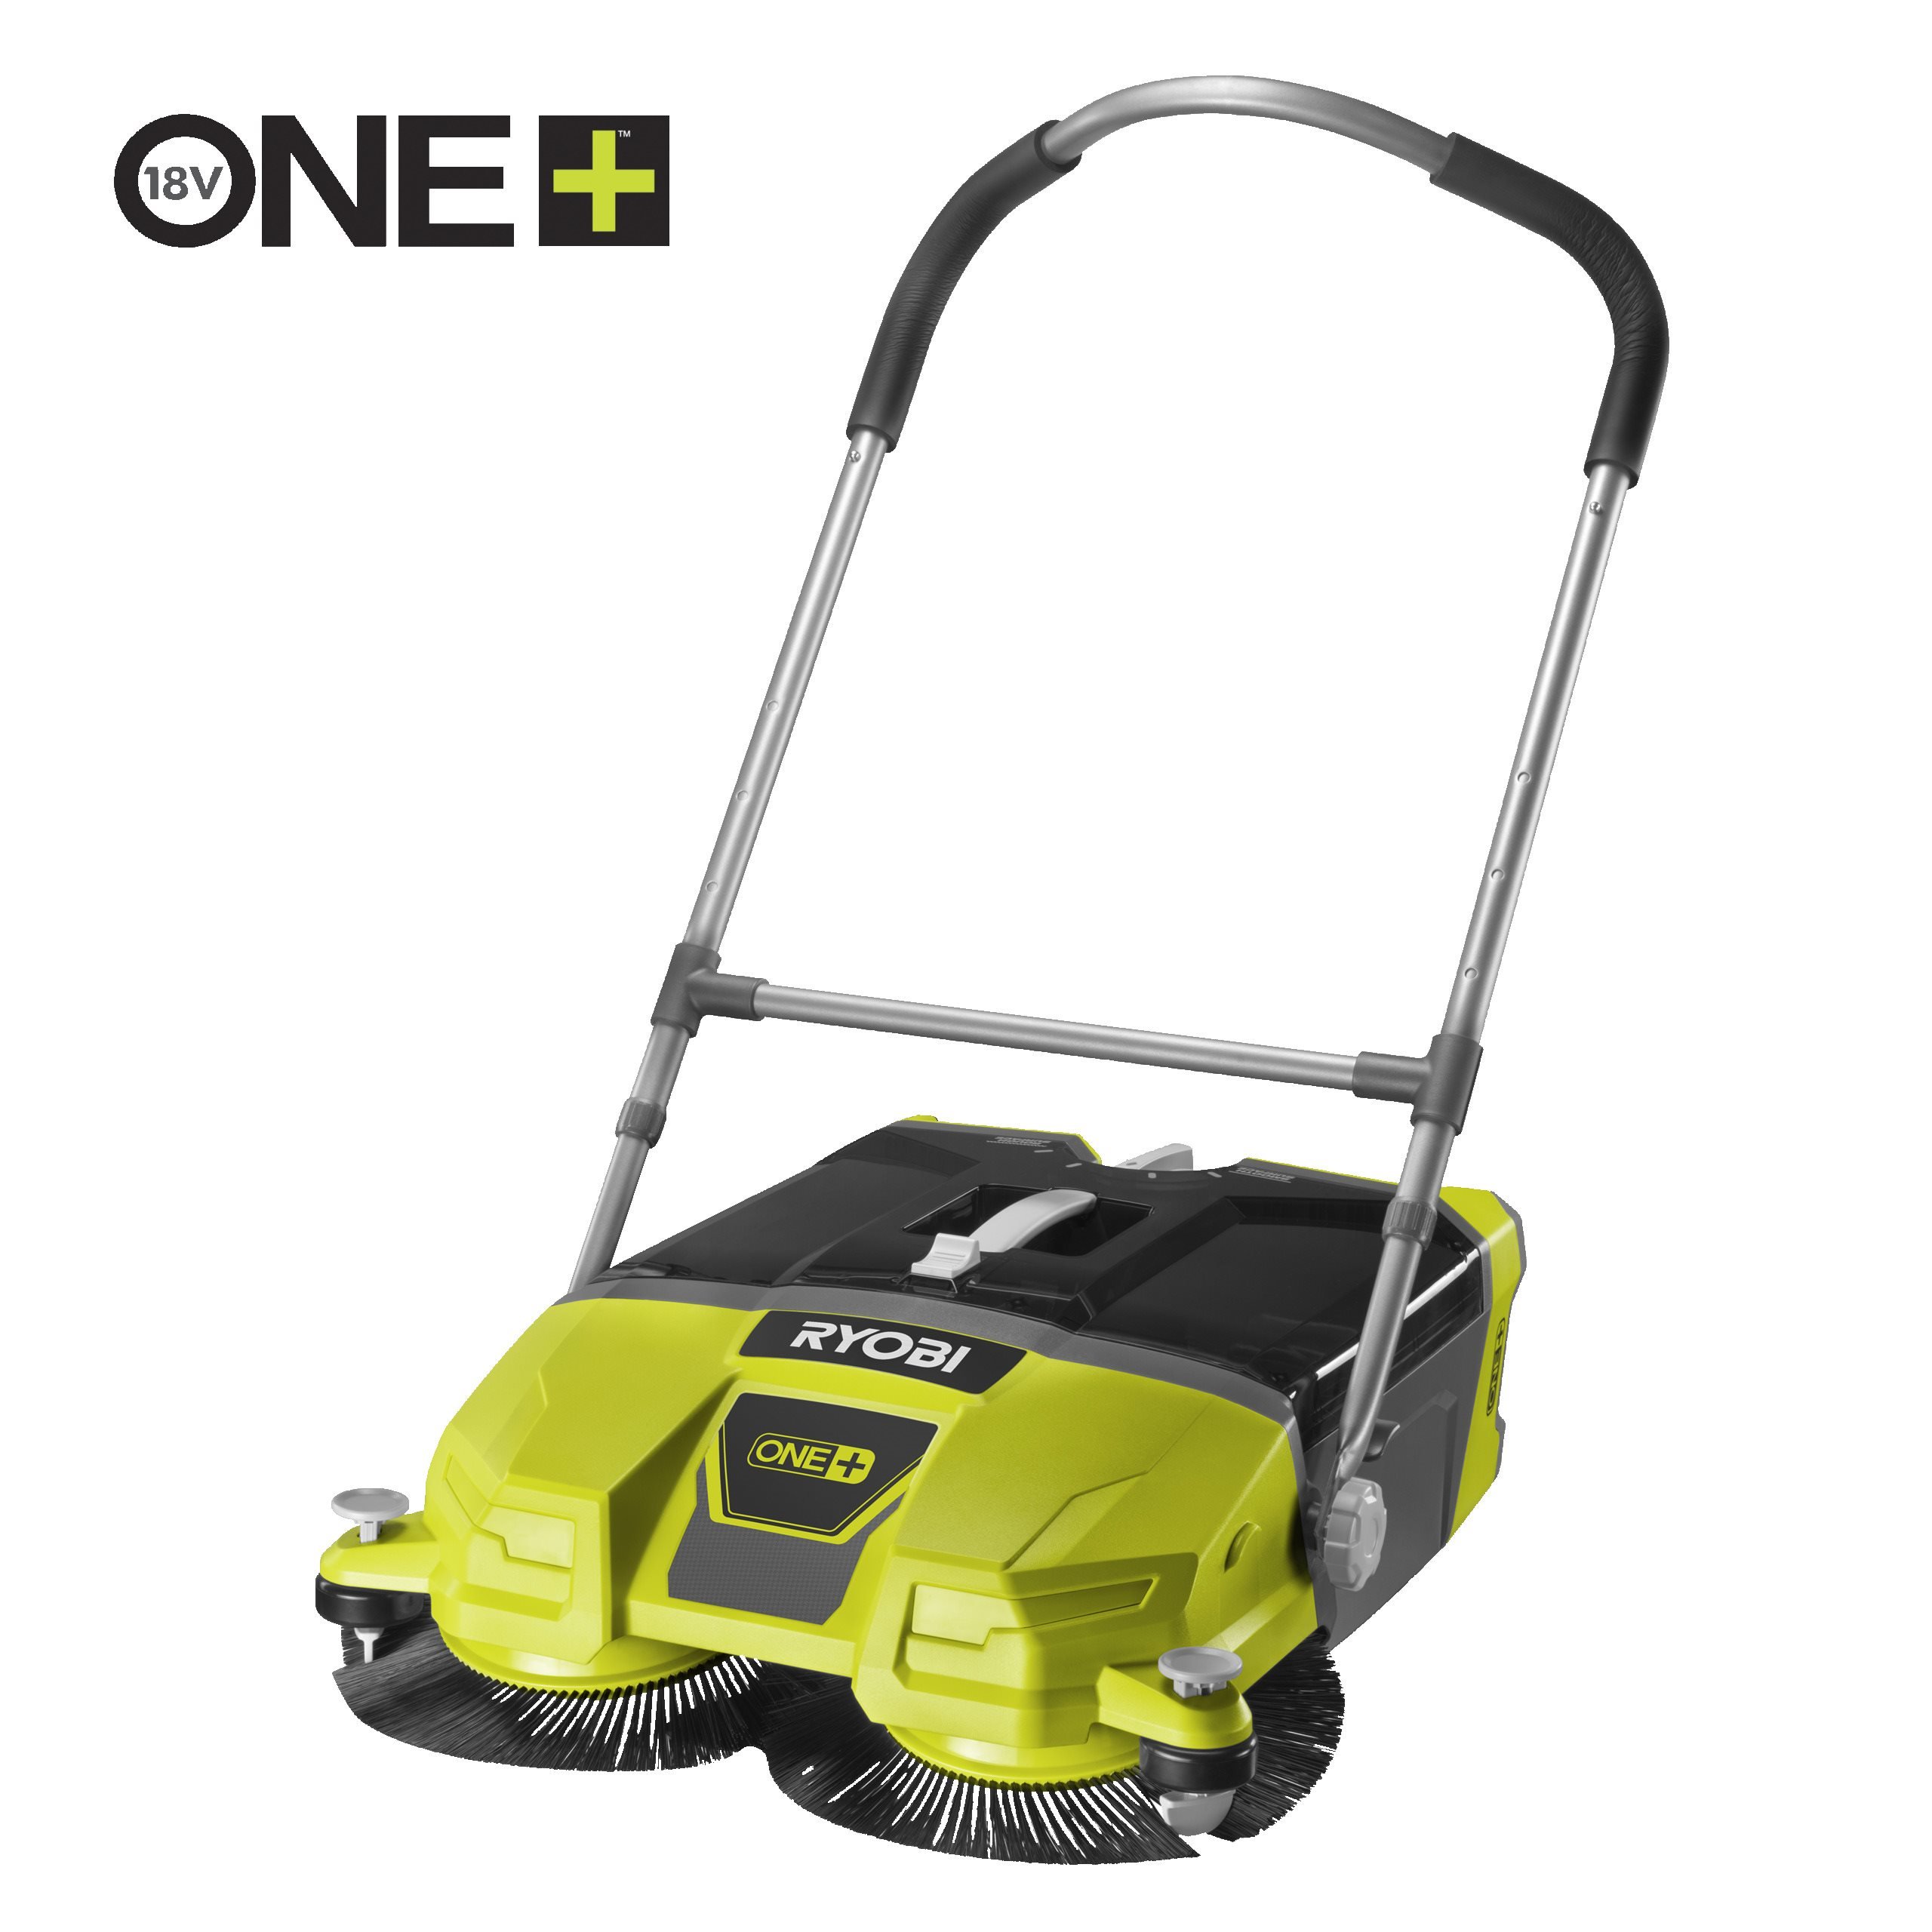 18V ONE+™ Cordless Debris Floor Sweeper (Bare Tool)